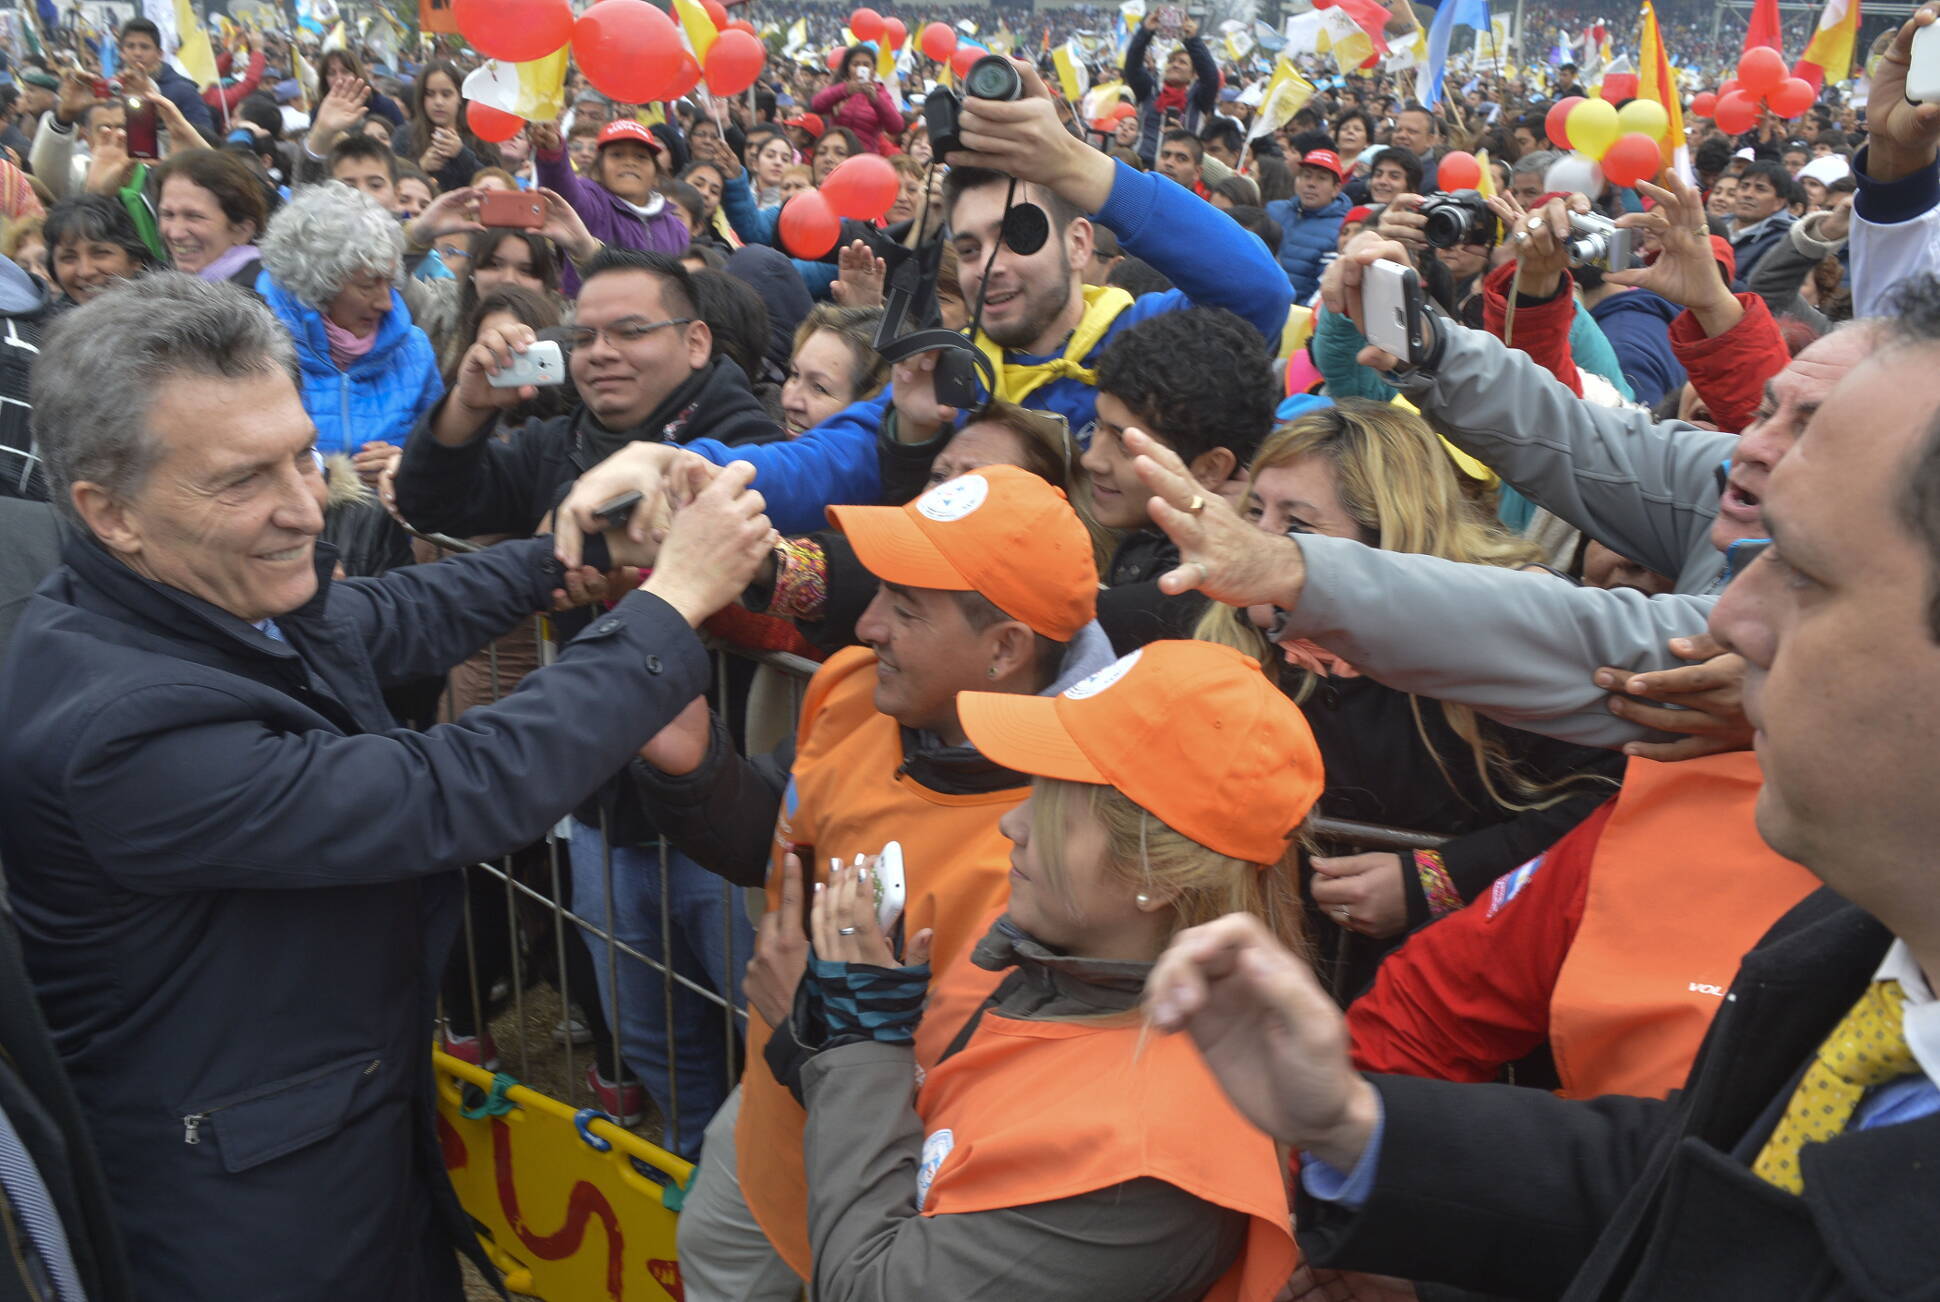 El presidente Macri abogó en favor de vencer todas las formas de pobreza 